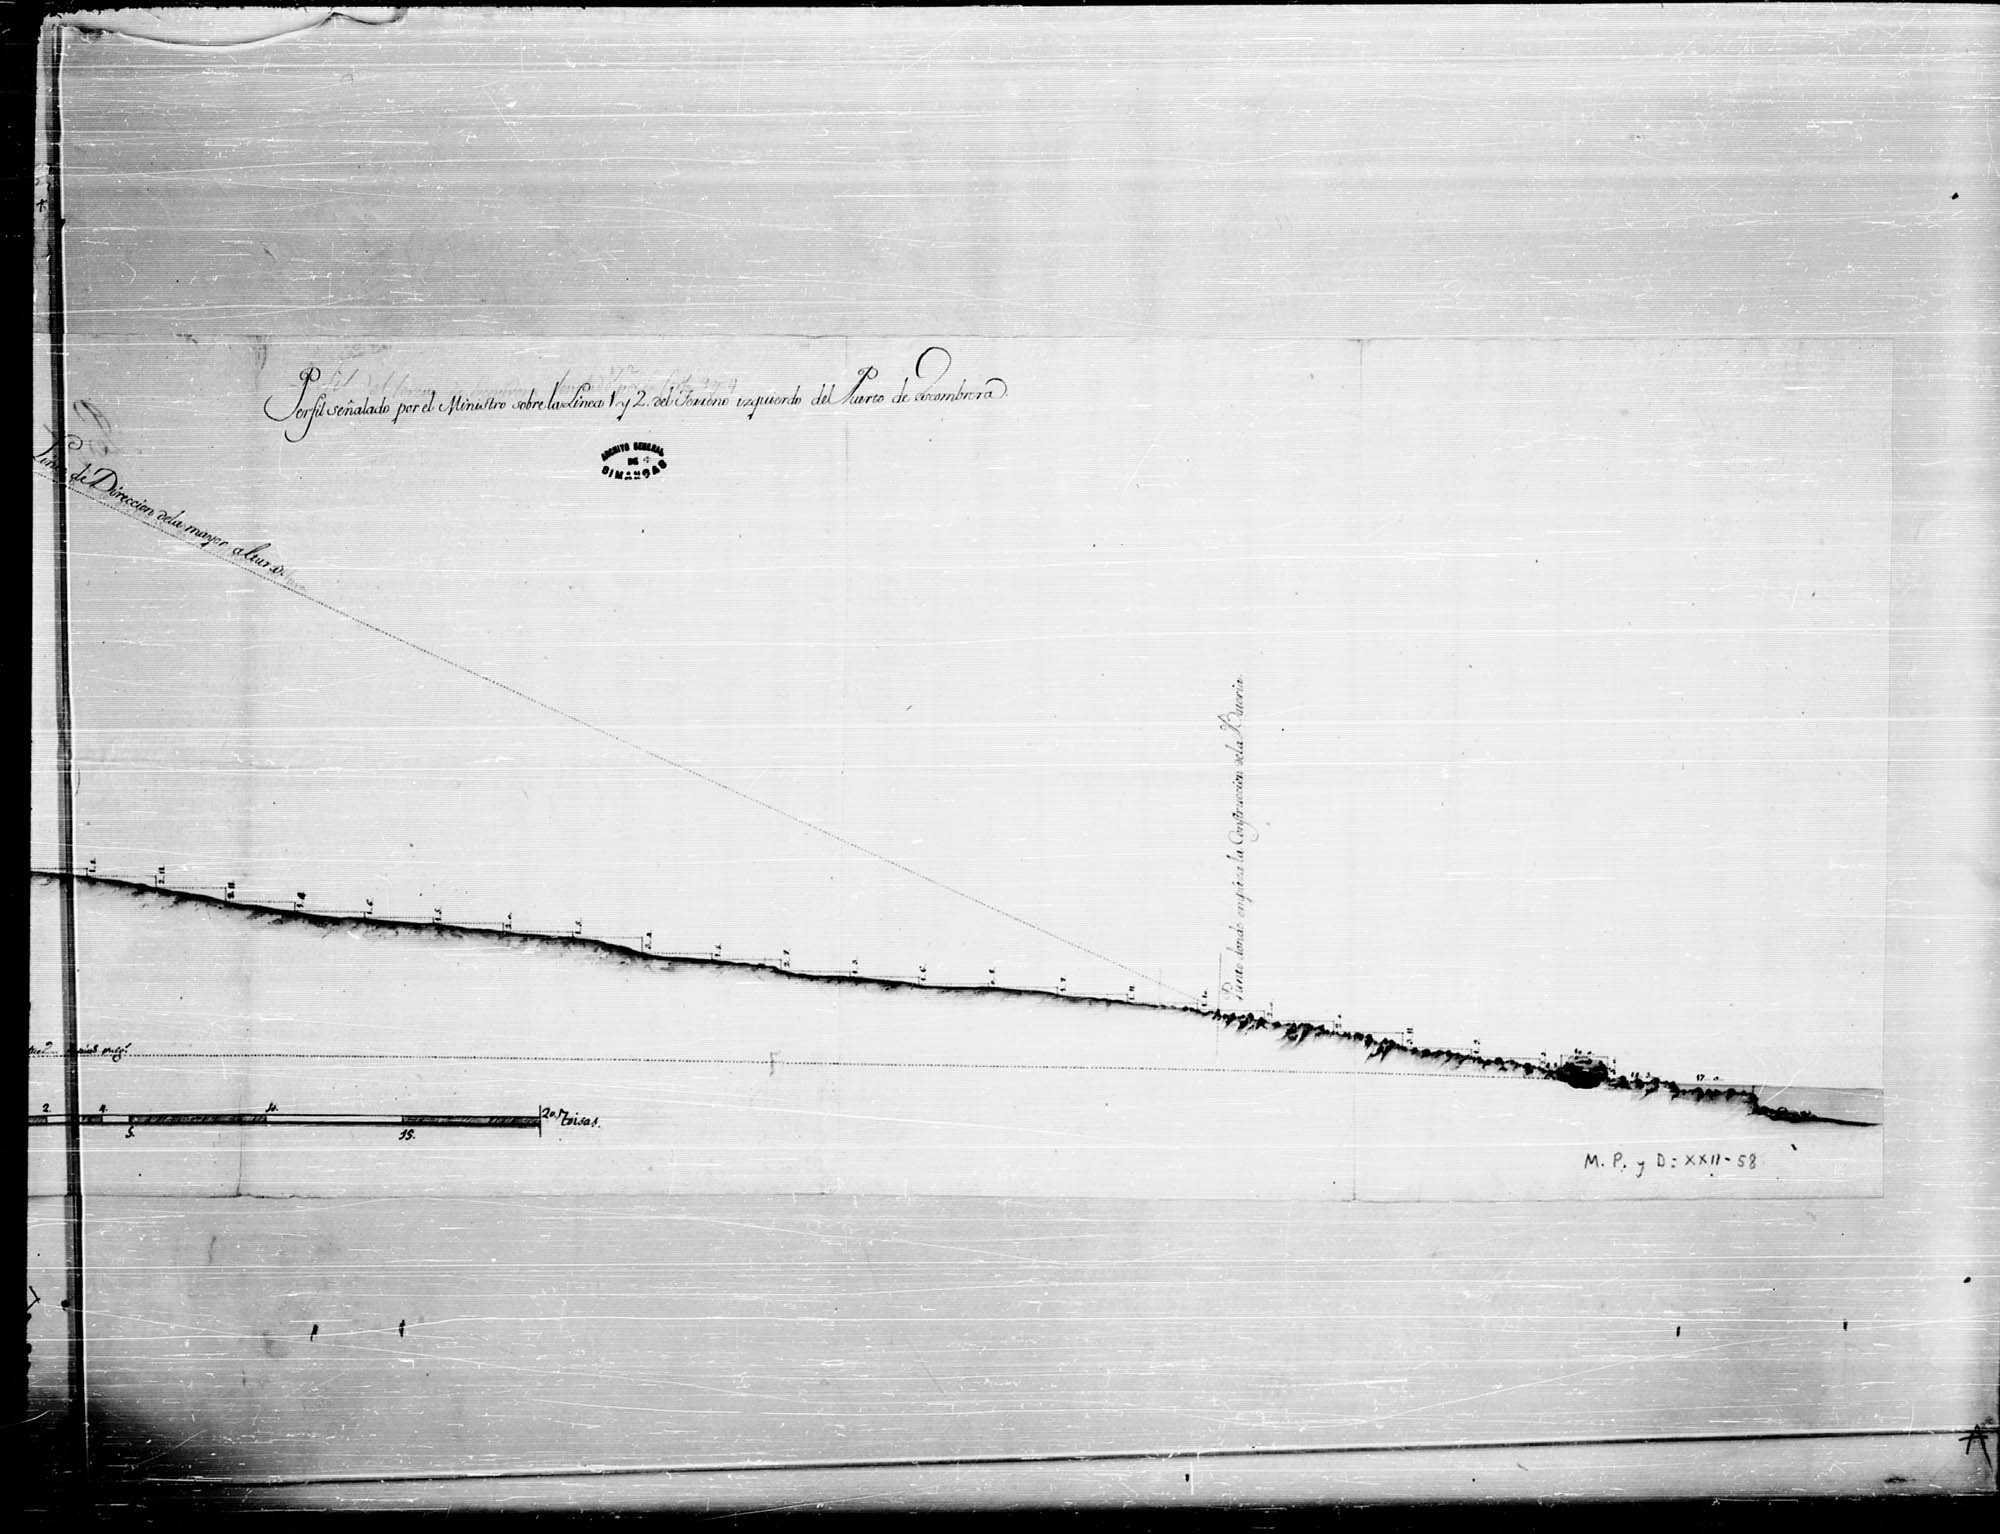 Perfil señalado por el Ministro sobre la línea 1 y 2 del terreno izquierdo del puerto de Escombreras.